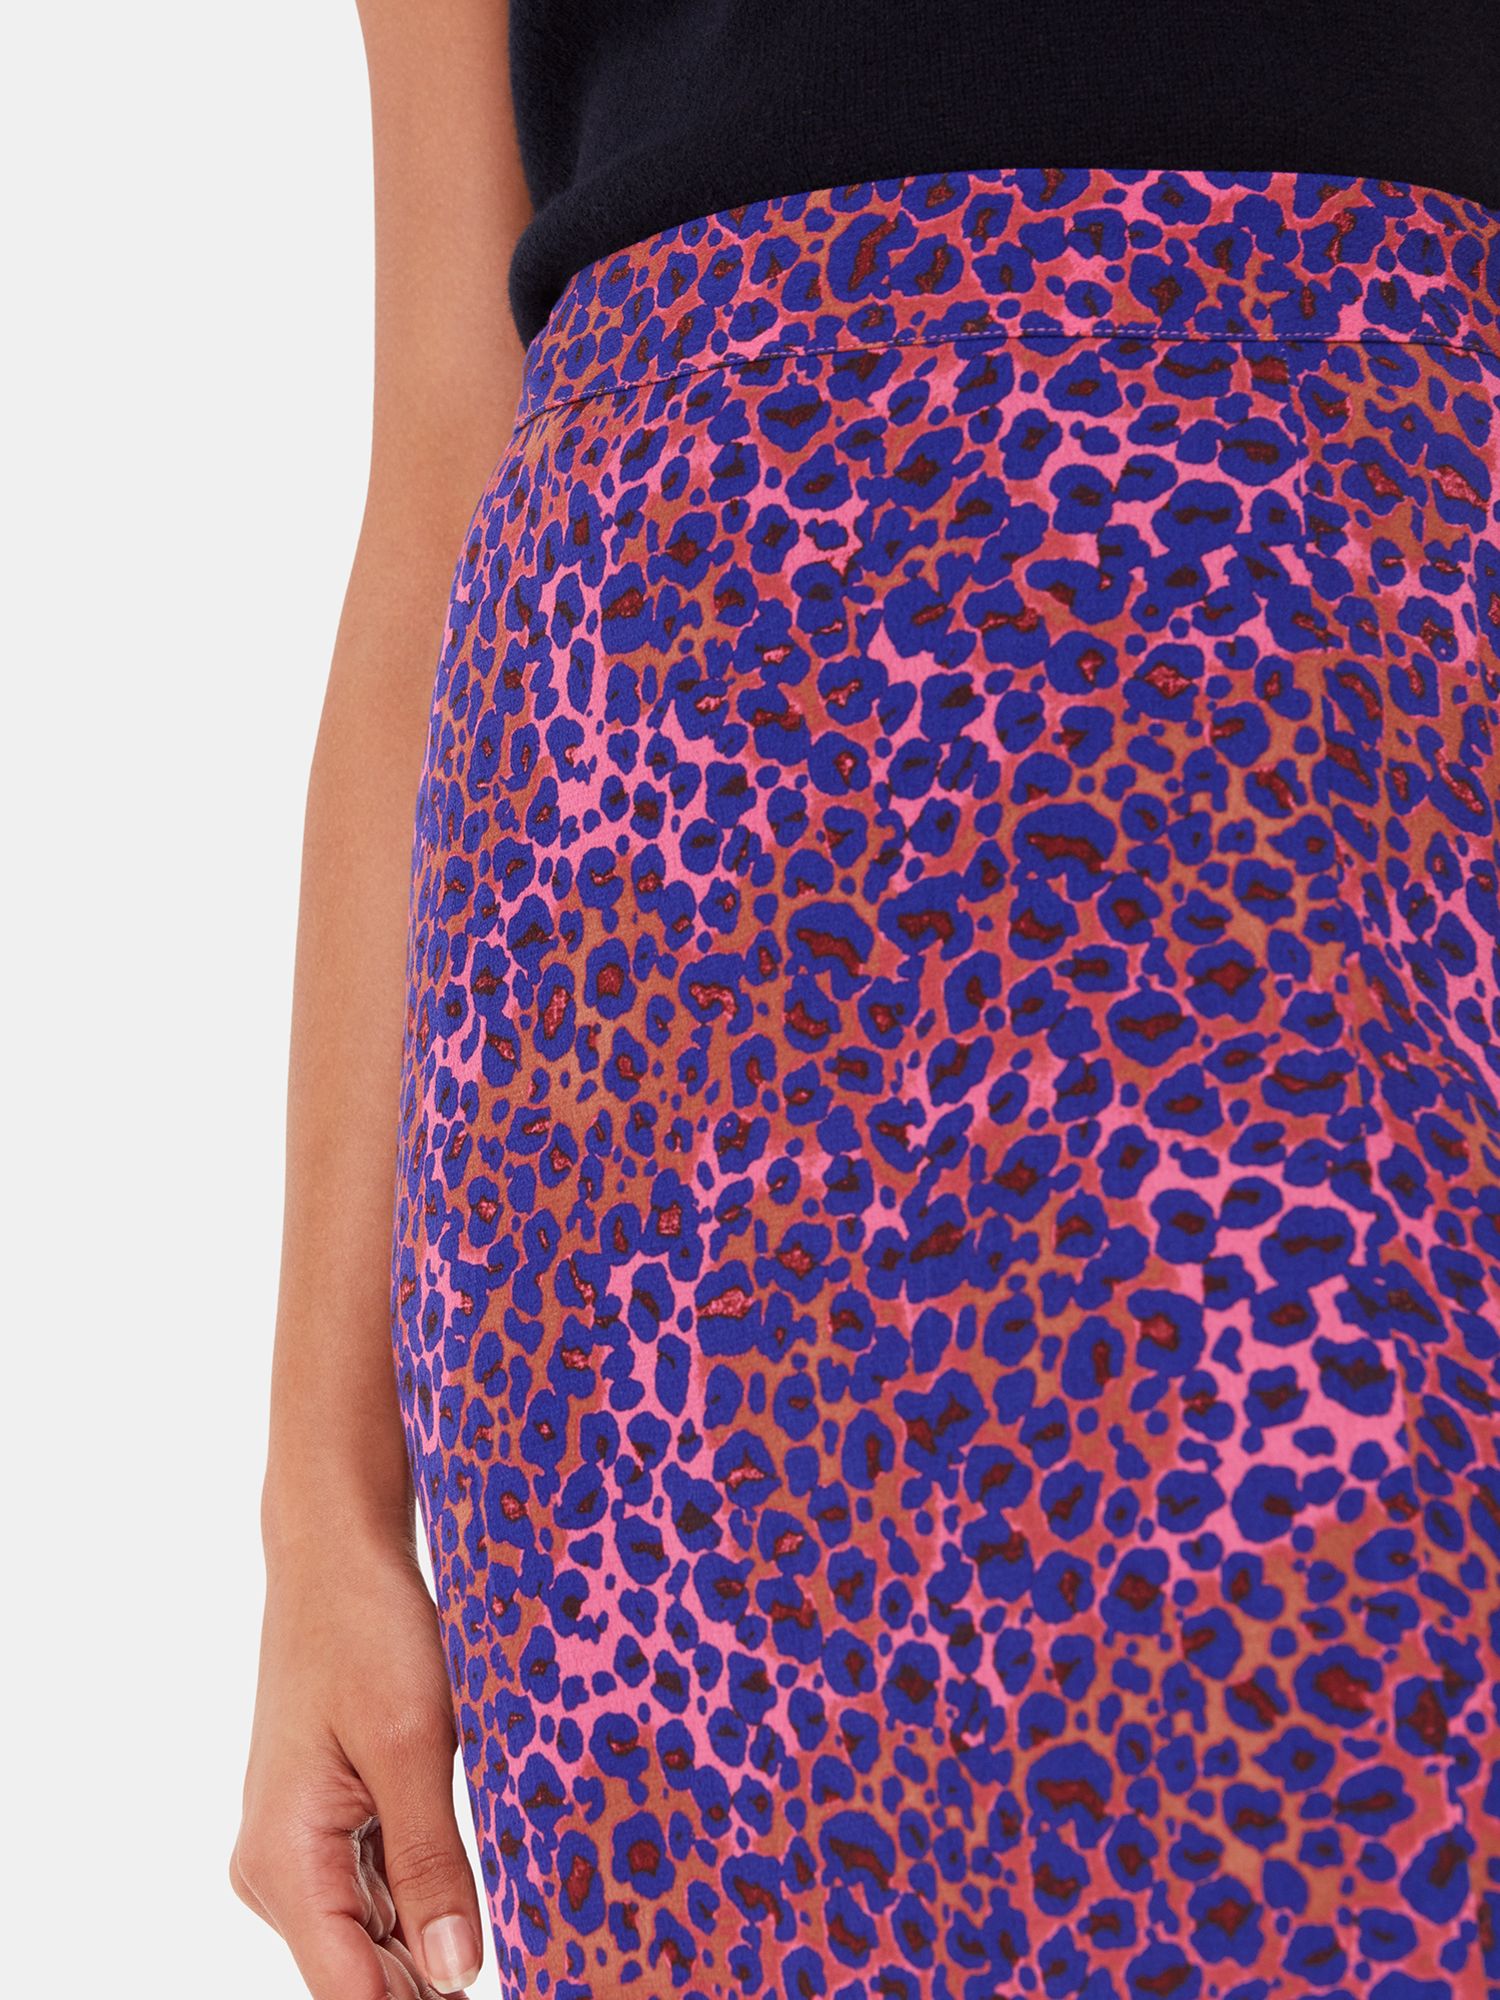 Buy Whistles Mottled Leopard Print Midi Skirt, Pink/Multi Online at johnlewis.com